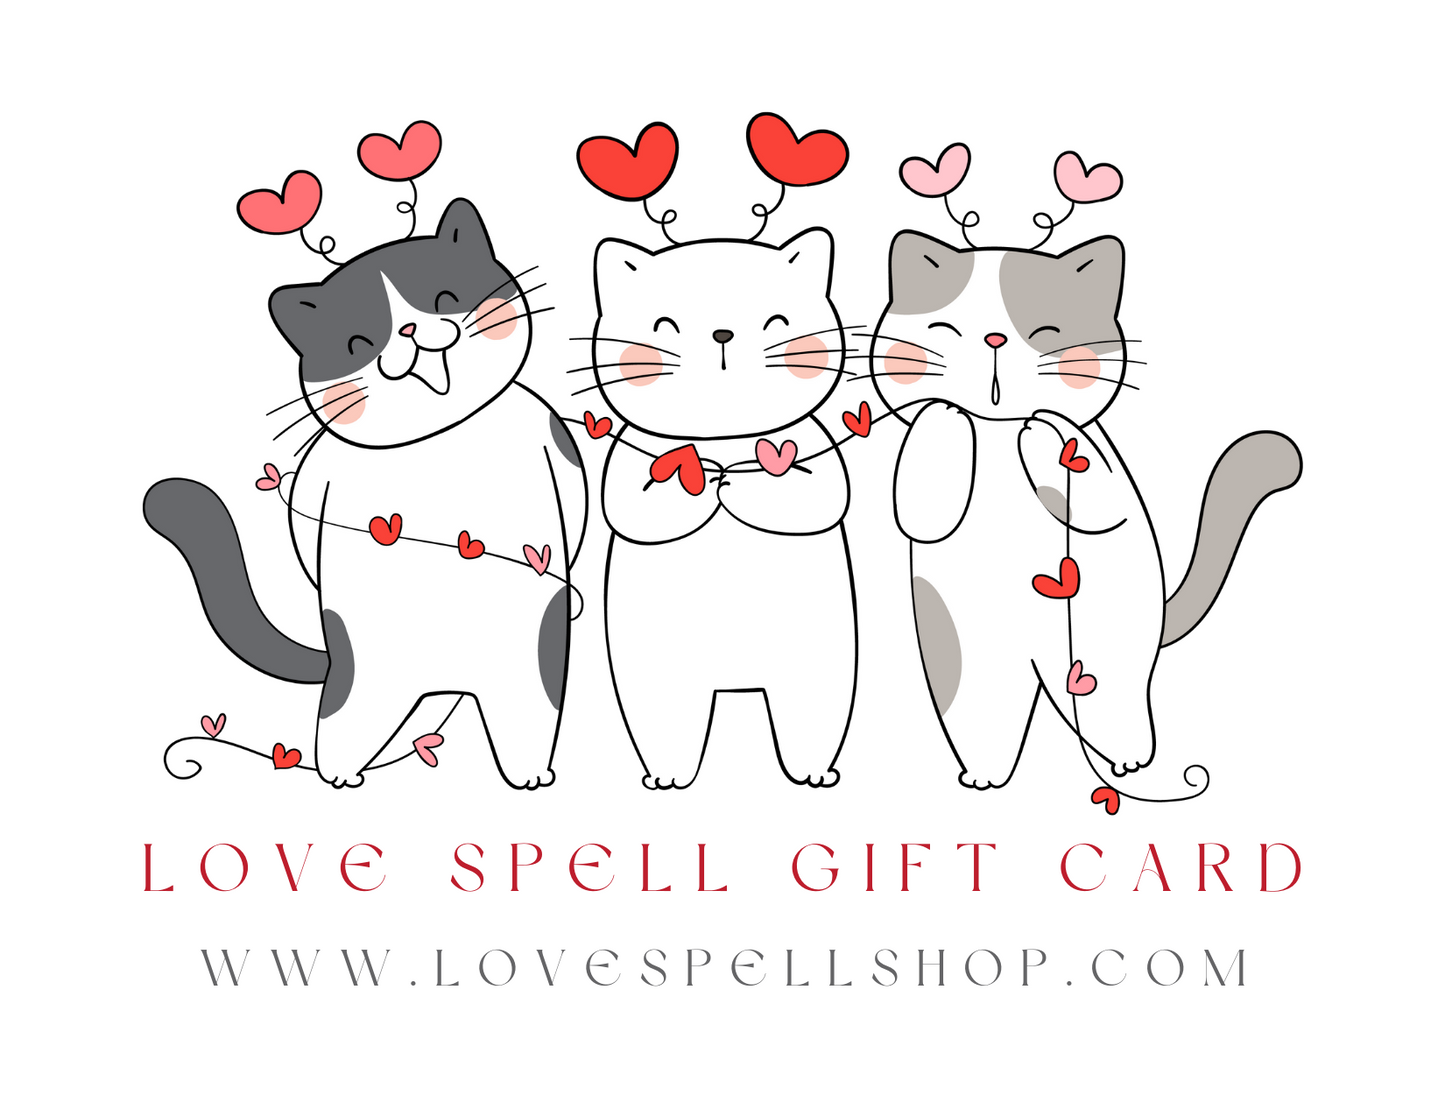 Love Spell Digital Gift Card (Cat Trio Hearts)